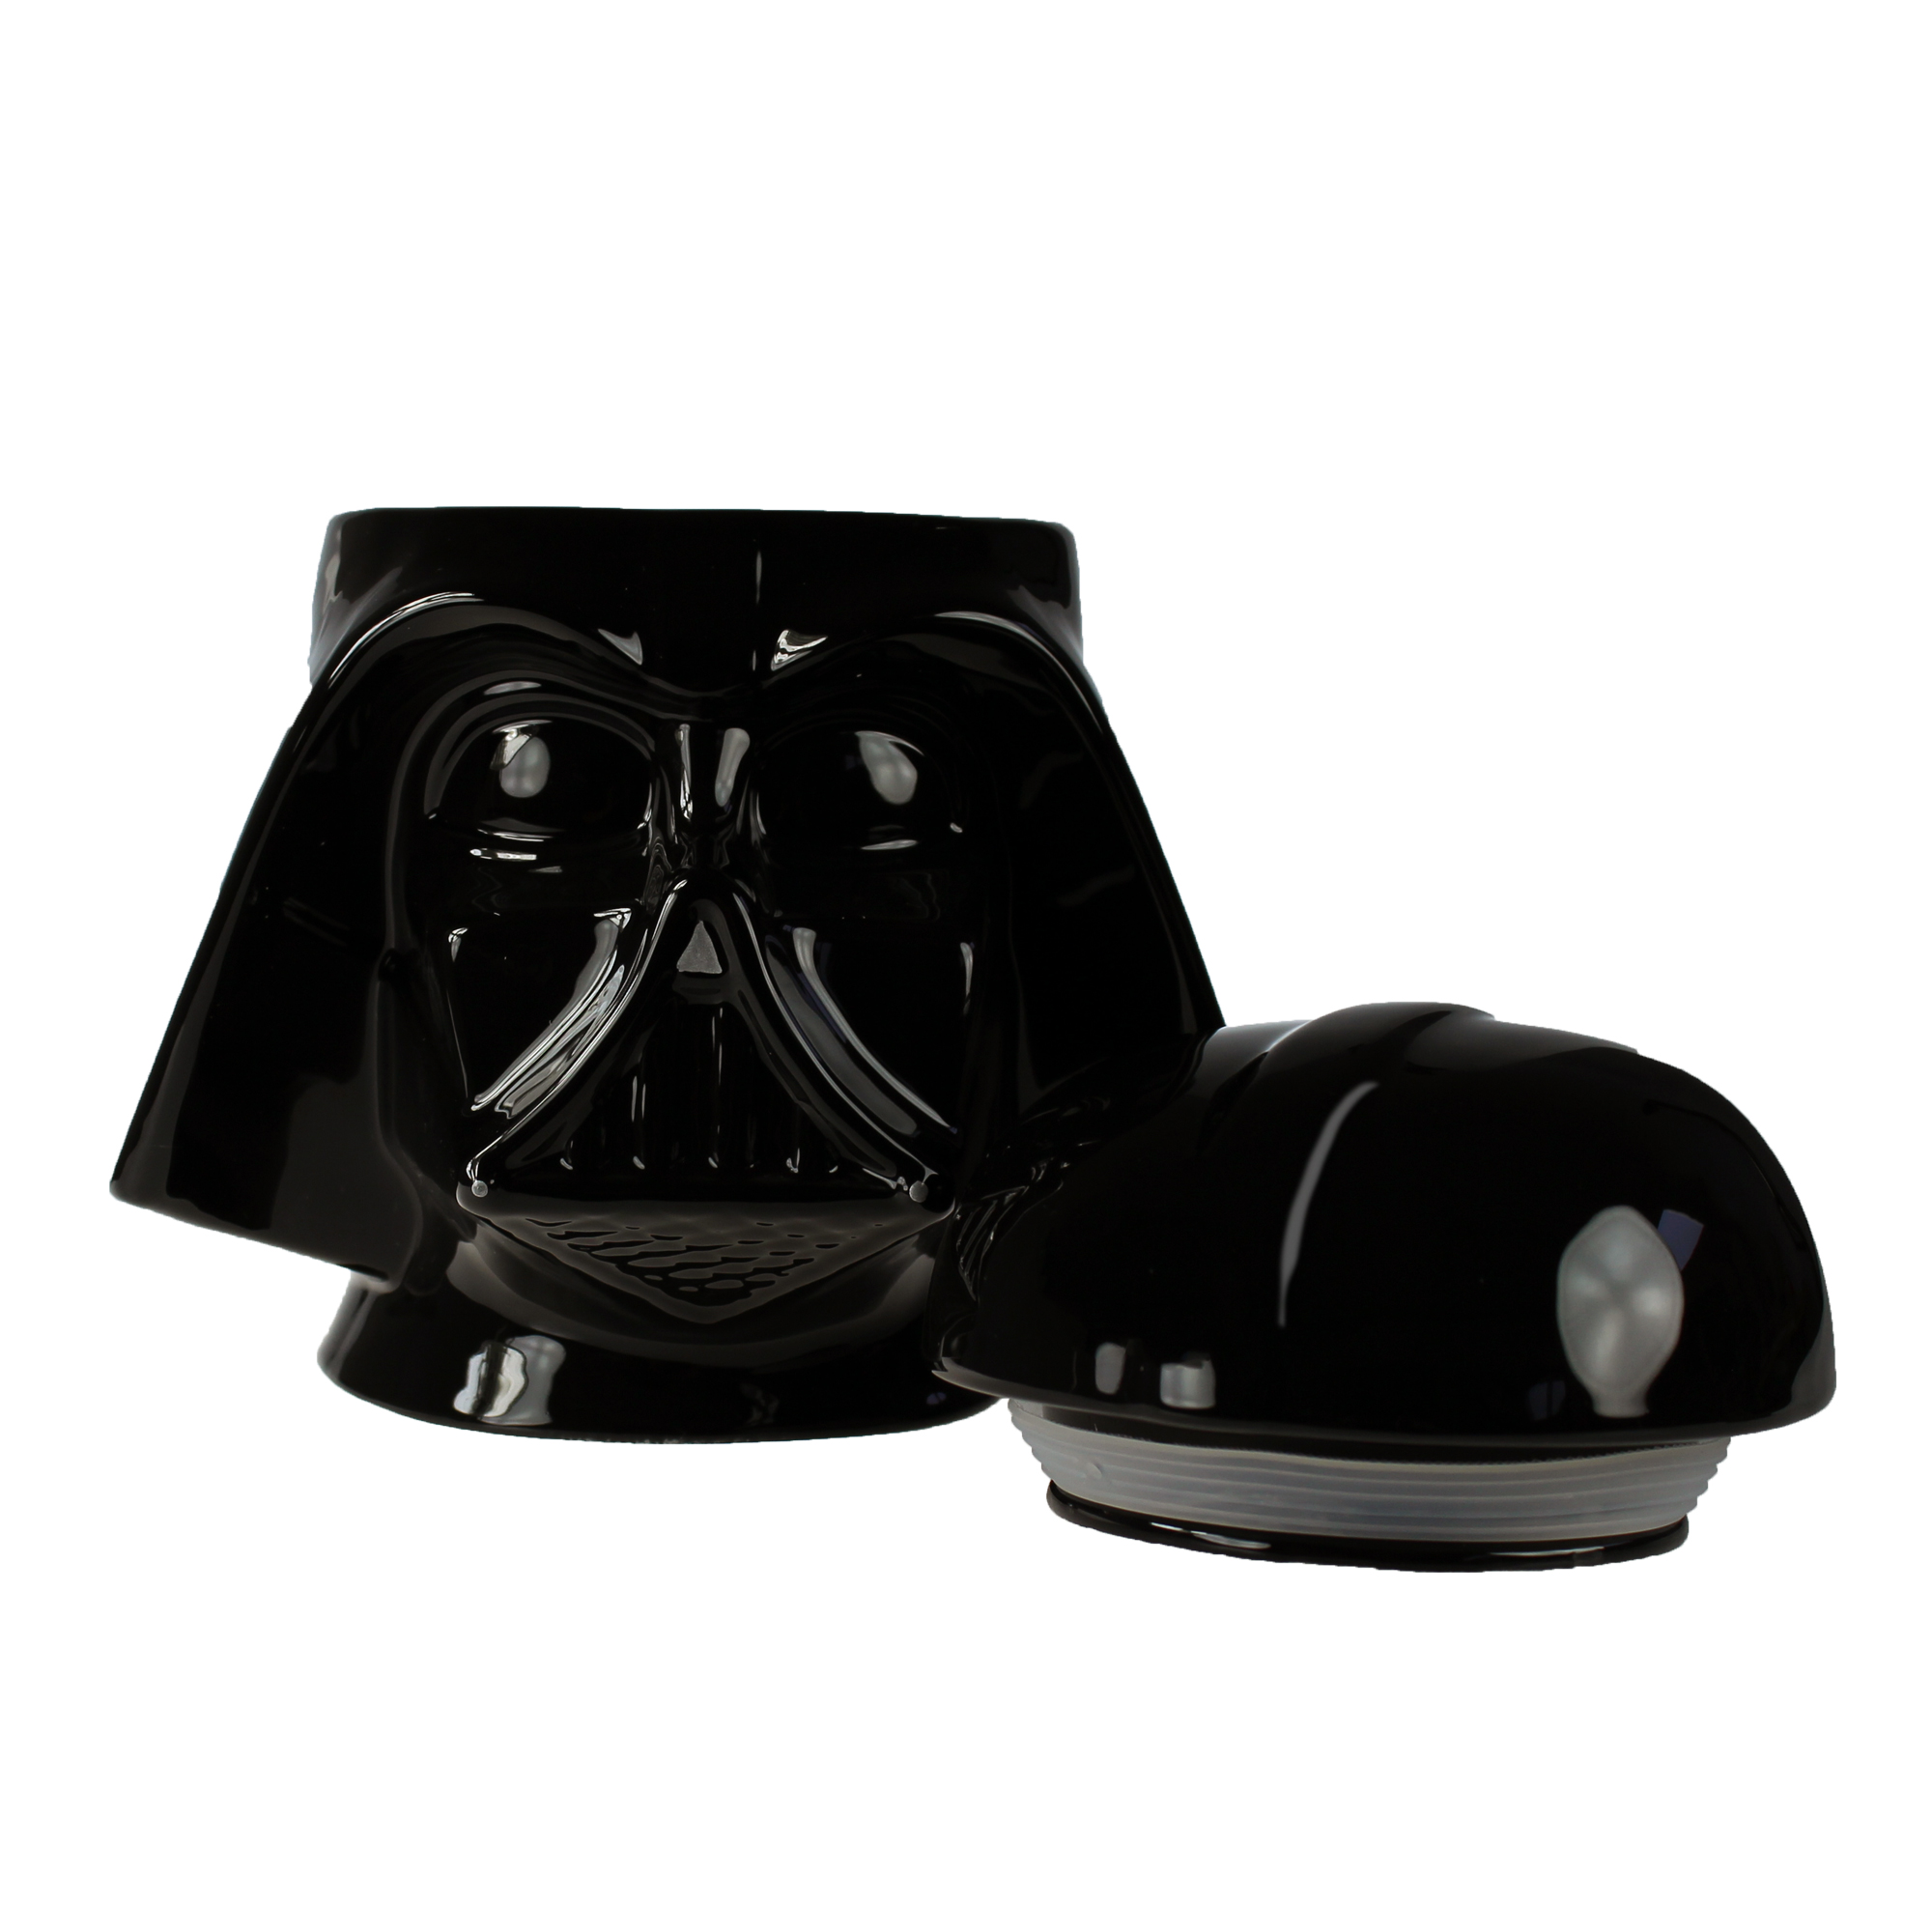 Star Wars Keramik Keksdose - Darth Vader 3280 - 5